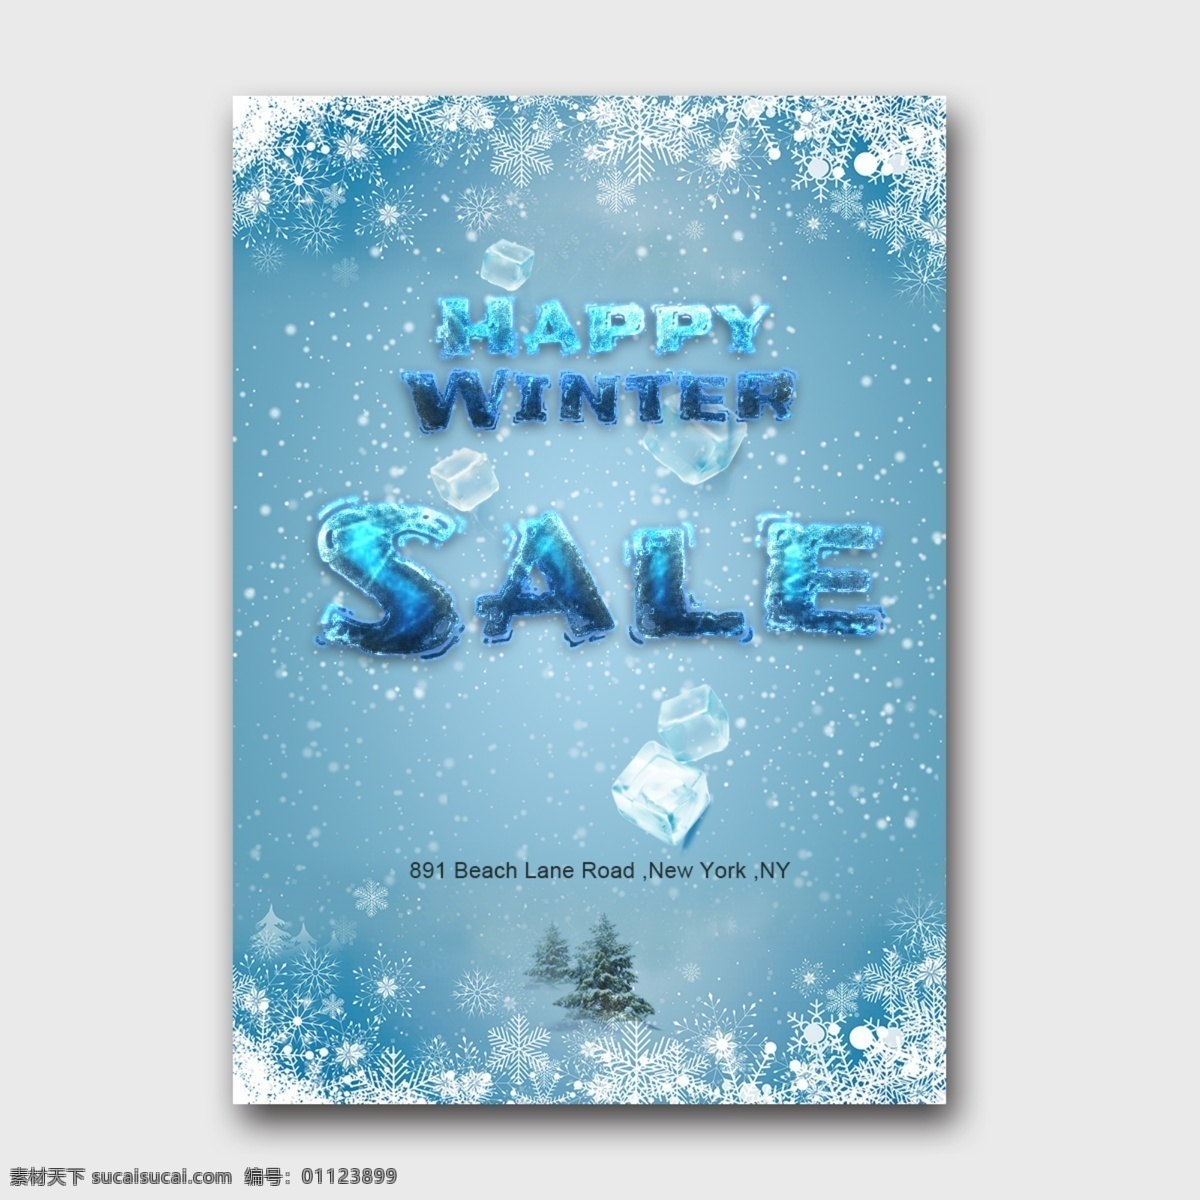 美好 雪 风景 愉快 冬天 销售 现代 海报 抽象 字体 美丽 似雪 快乐 冬季 凉 雪花 冰块 背景 抽象字体 可编辑的字体 书法